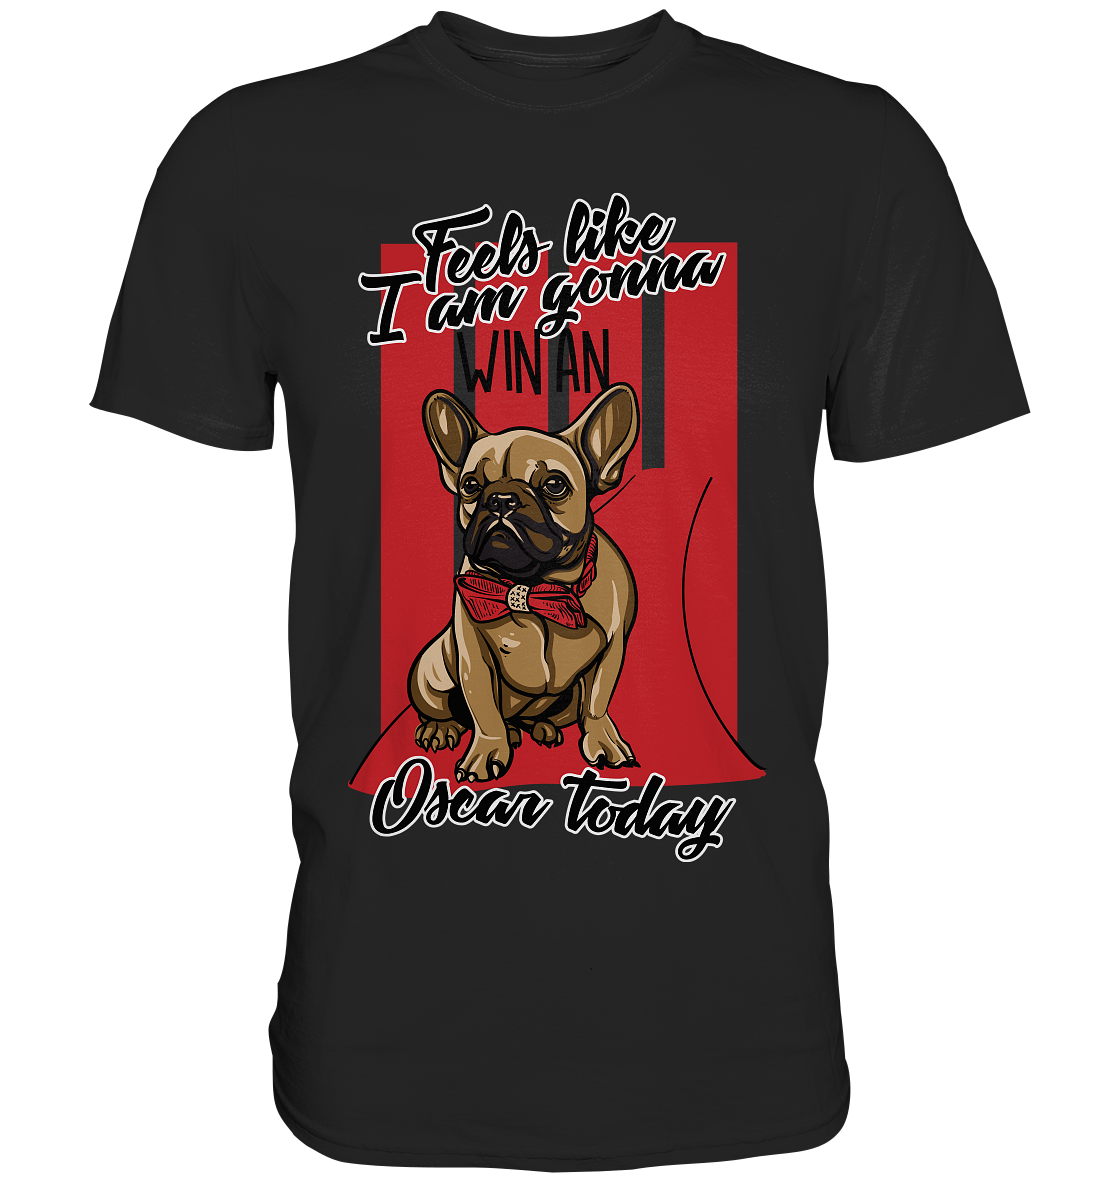 Win an Oscar. Bulldogge Hund - Unisex Premium Shirt